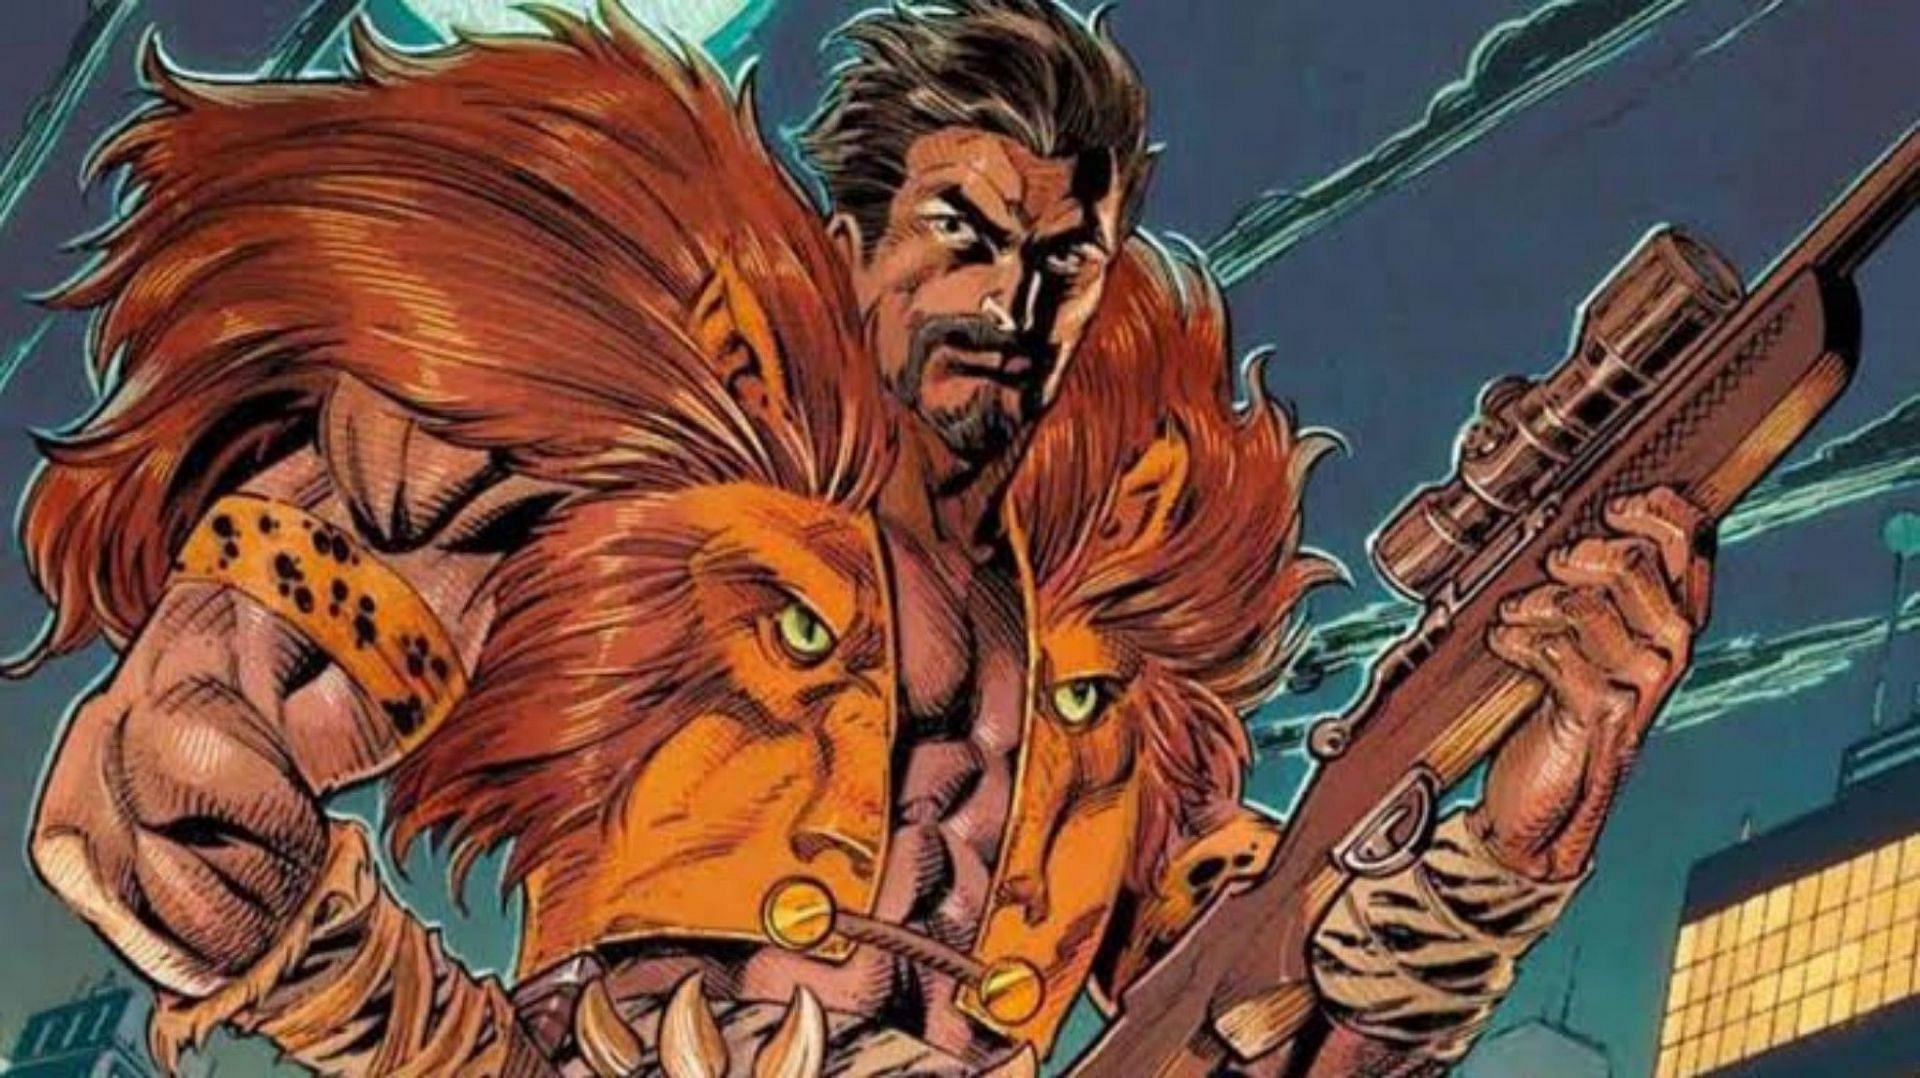 Kraven the Hunter in the comics (Image via Marvel Comics)